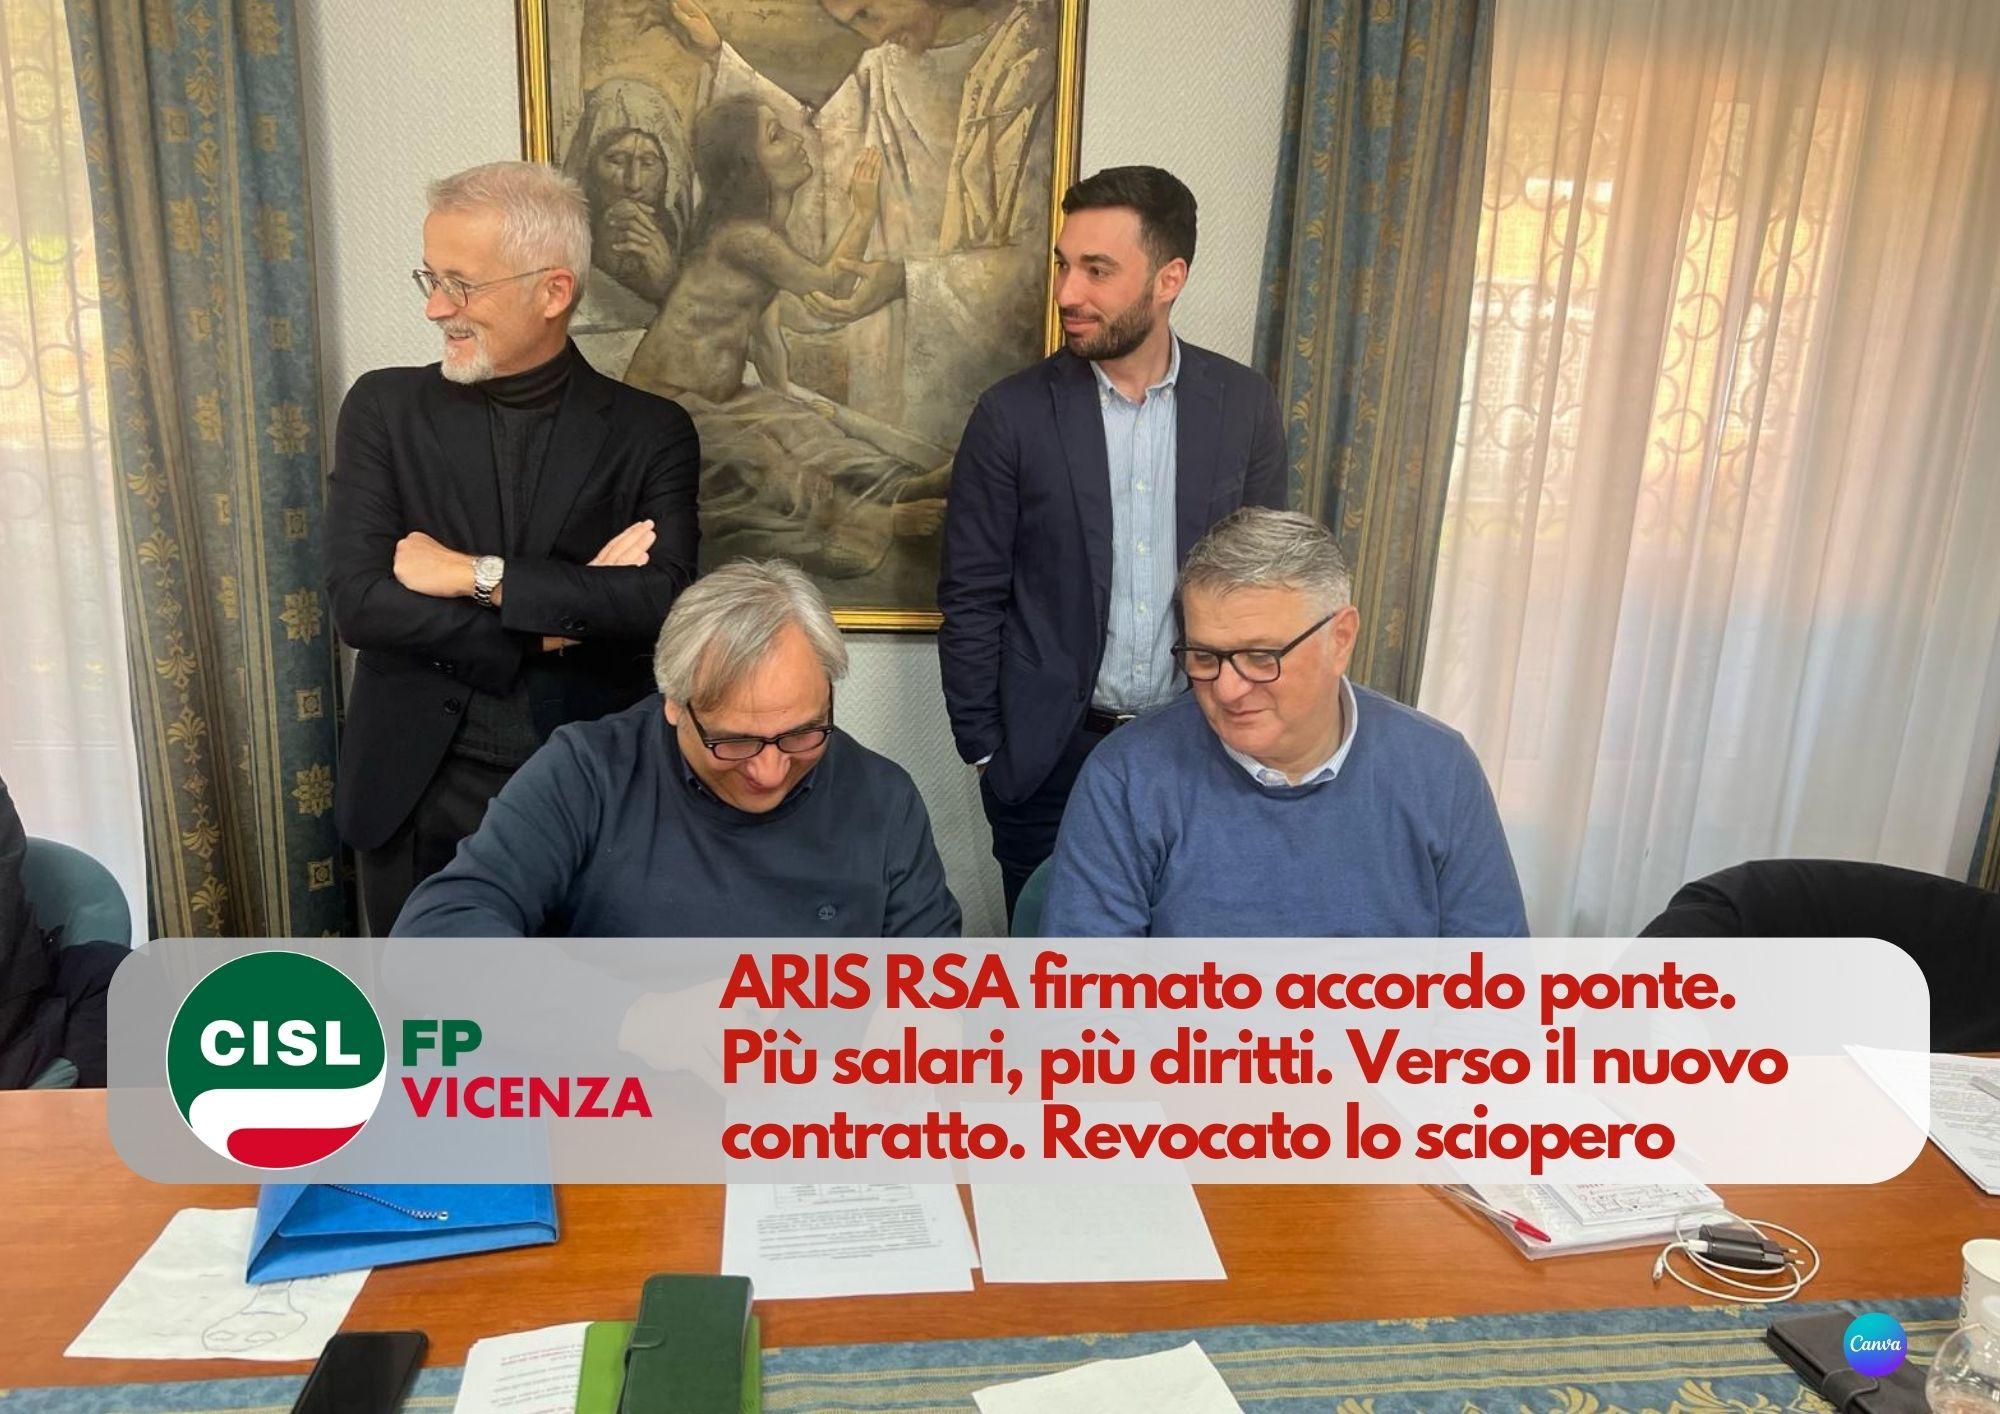 CISL FP Vicenza. ARIS RSA firmato accordo ponte. Più salari, più diritti. Verso il nuovo contratto